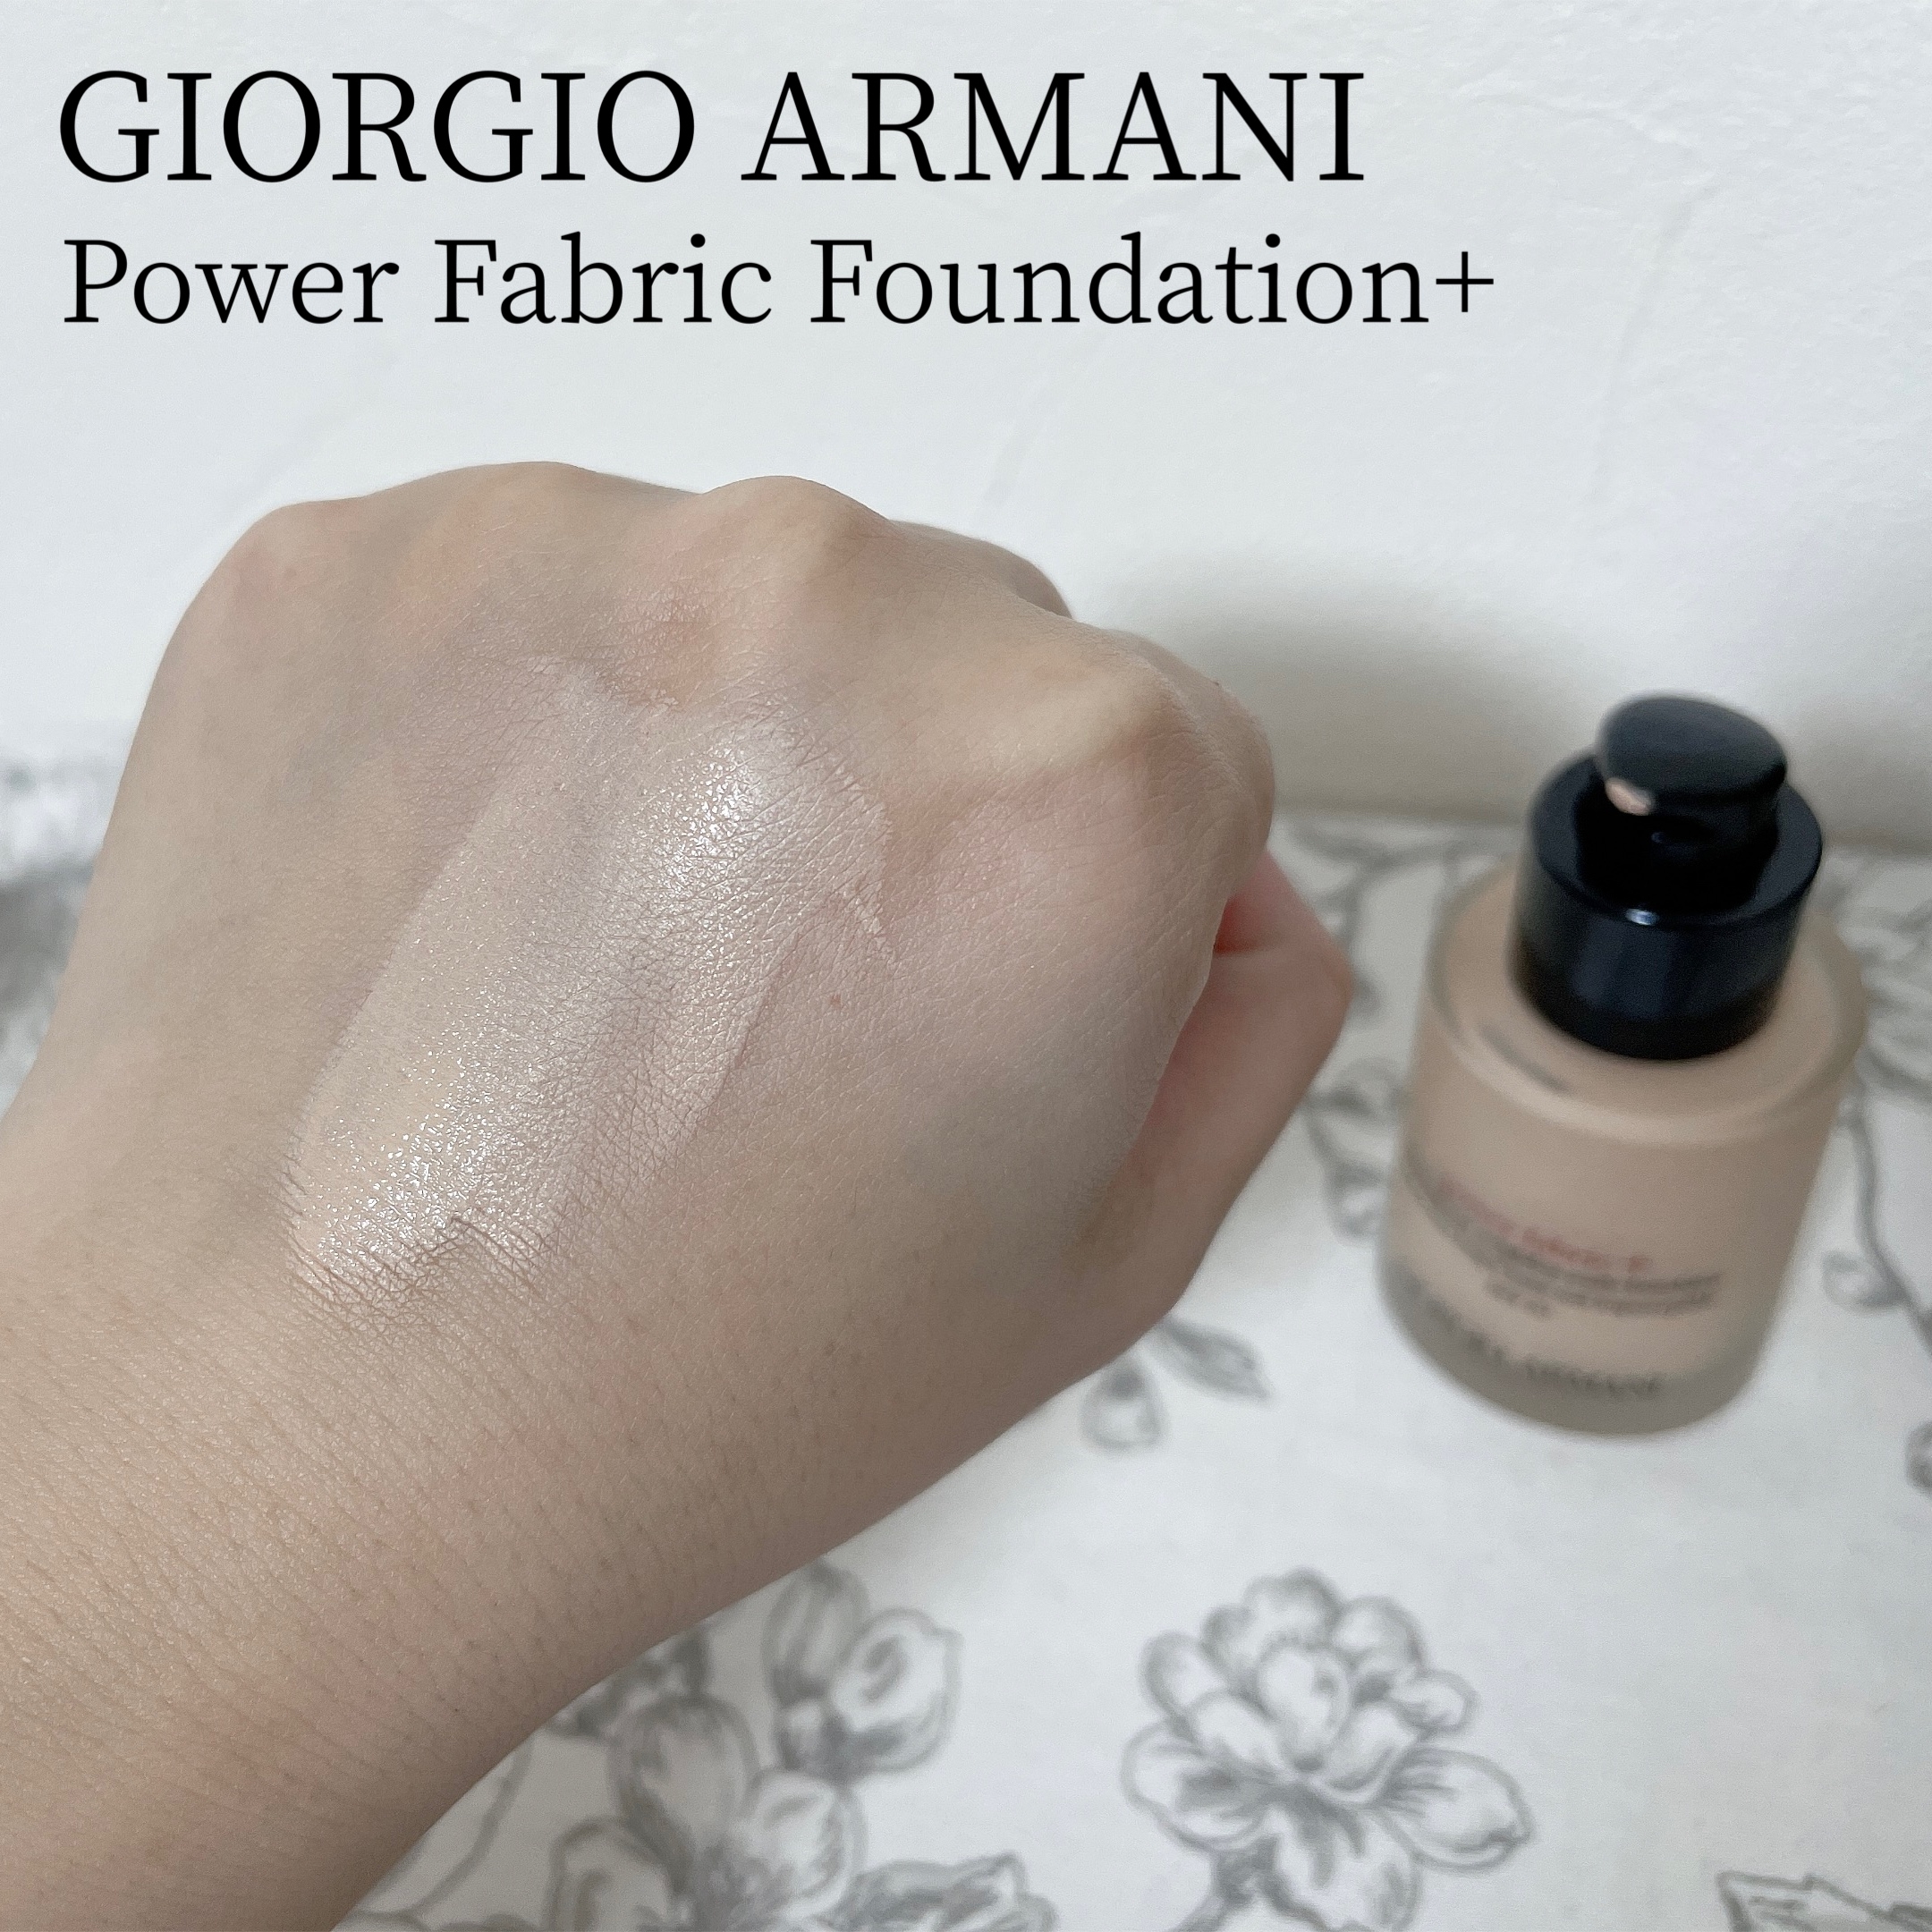 GIORGIO ARMANI BEAUTY(ジョルジオ アルマーニ ビューティ) パワー ファブリック ファンデーション +の良い点・メリットに関するもいさんの口コミ画像2